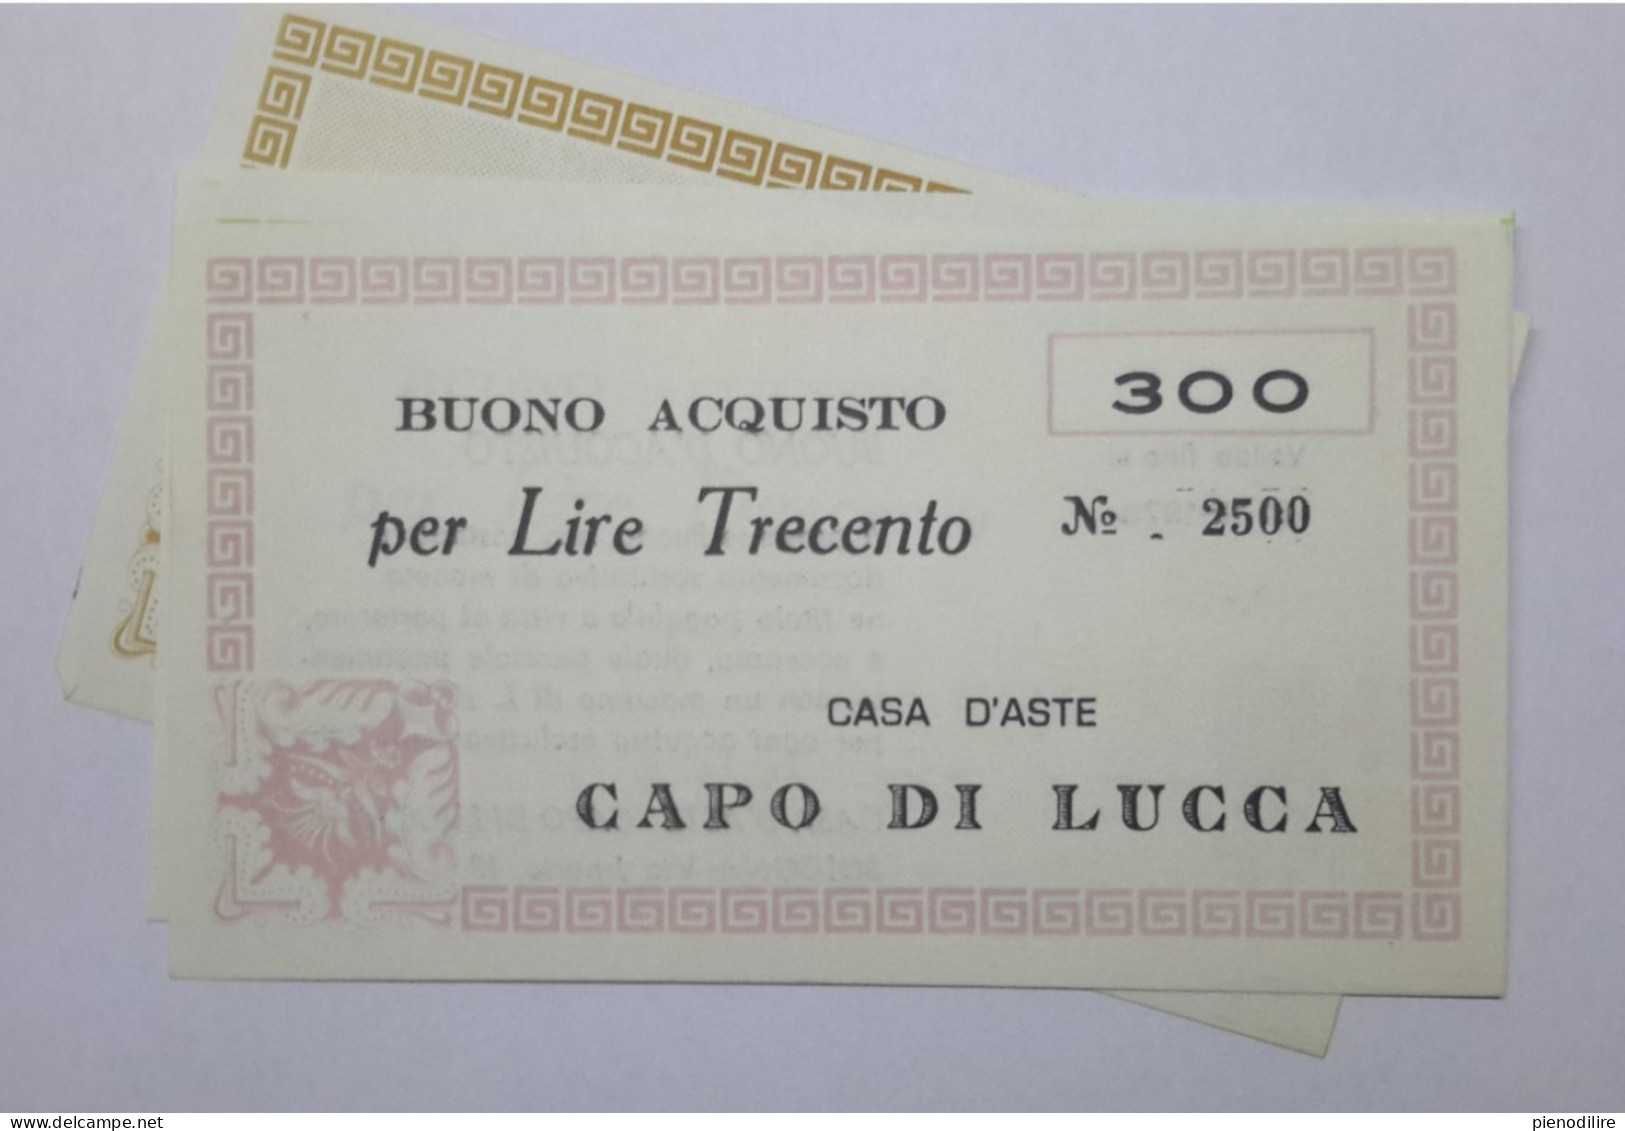 LOTTO 5Pz. 100 200 300 400 LIRE BUONI ACQUISTO CASA D'ASTE CAPO DI LUCCA VALIDO FINO AL 31.12.1976 (A.1) - [10] Checks And Mini-checks